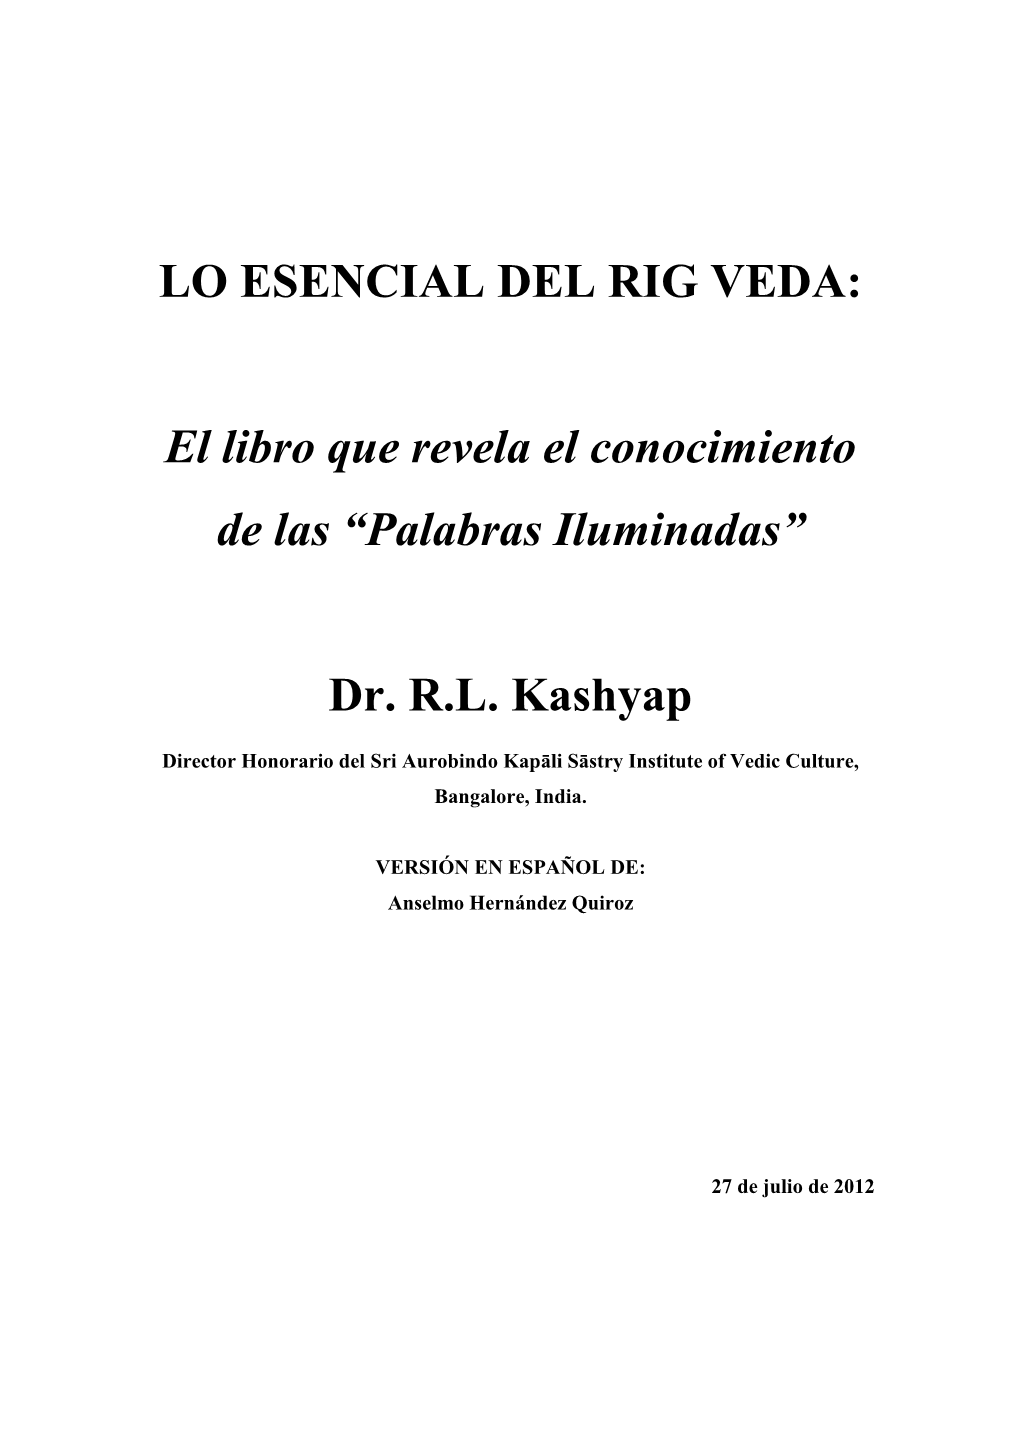 LO ESENCIAL DEL RIG VEDA: El Libro Que Revela El Conocimiento De Las “Palabras Iluminadas” Dr. R.L. Kashyap